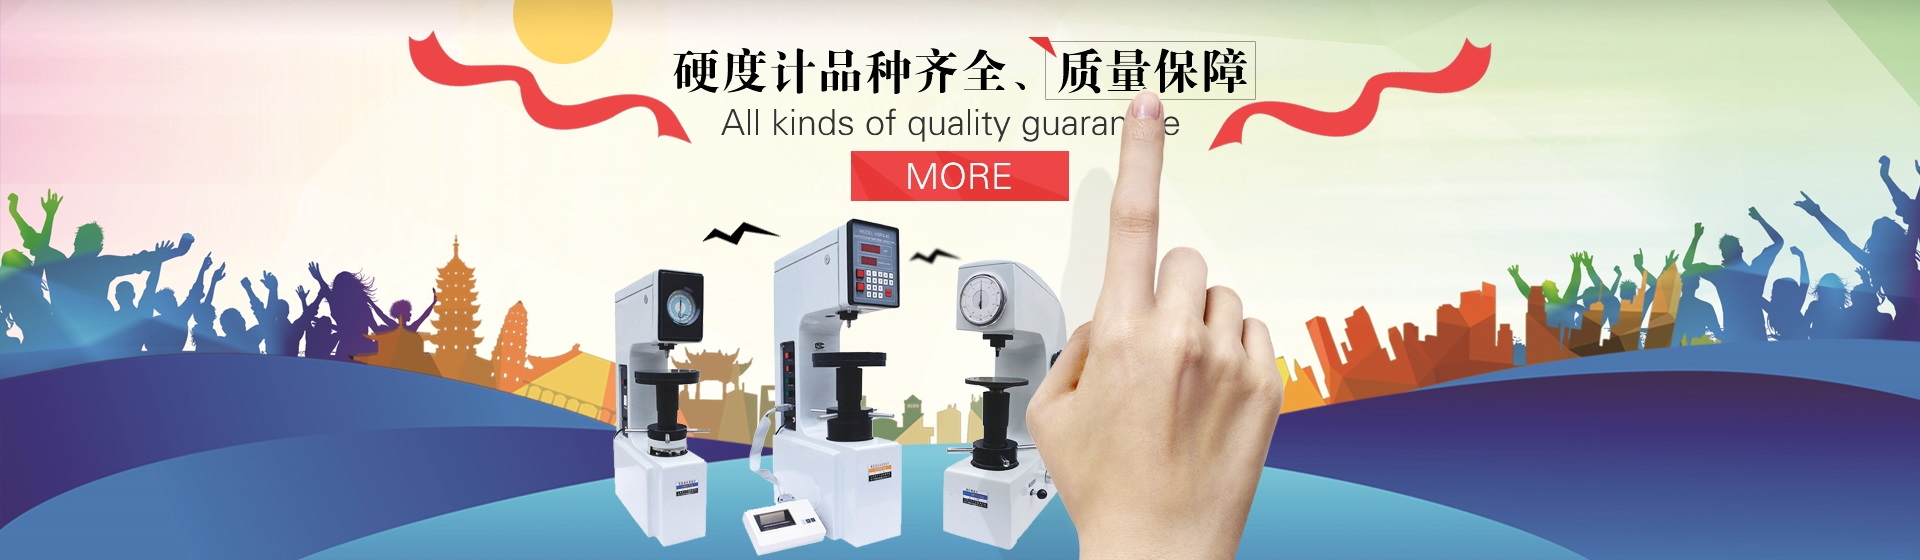 哈尔滨莱华试验仪器销售有限公司，产品质量保障！